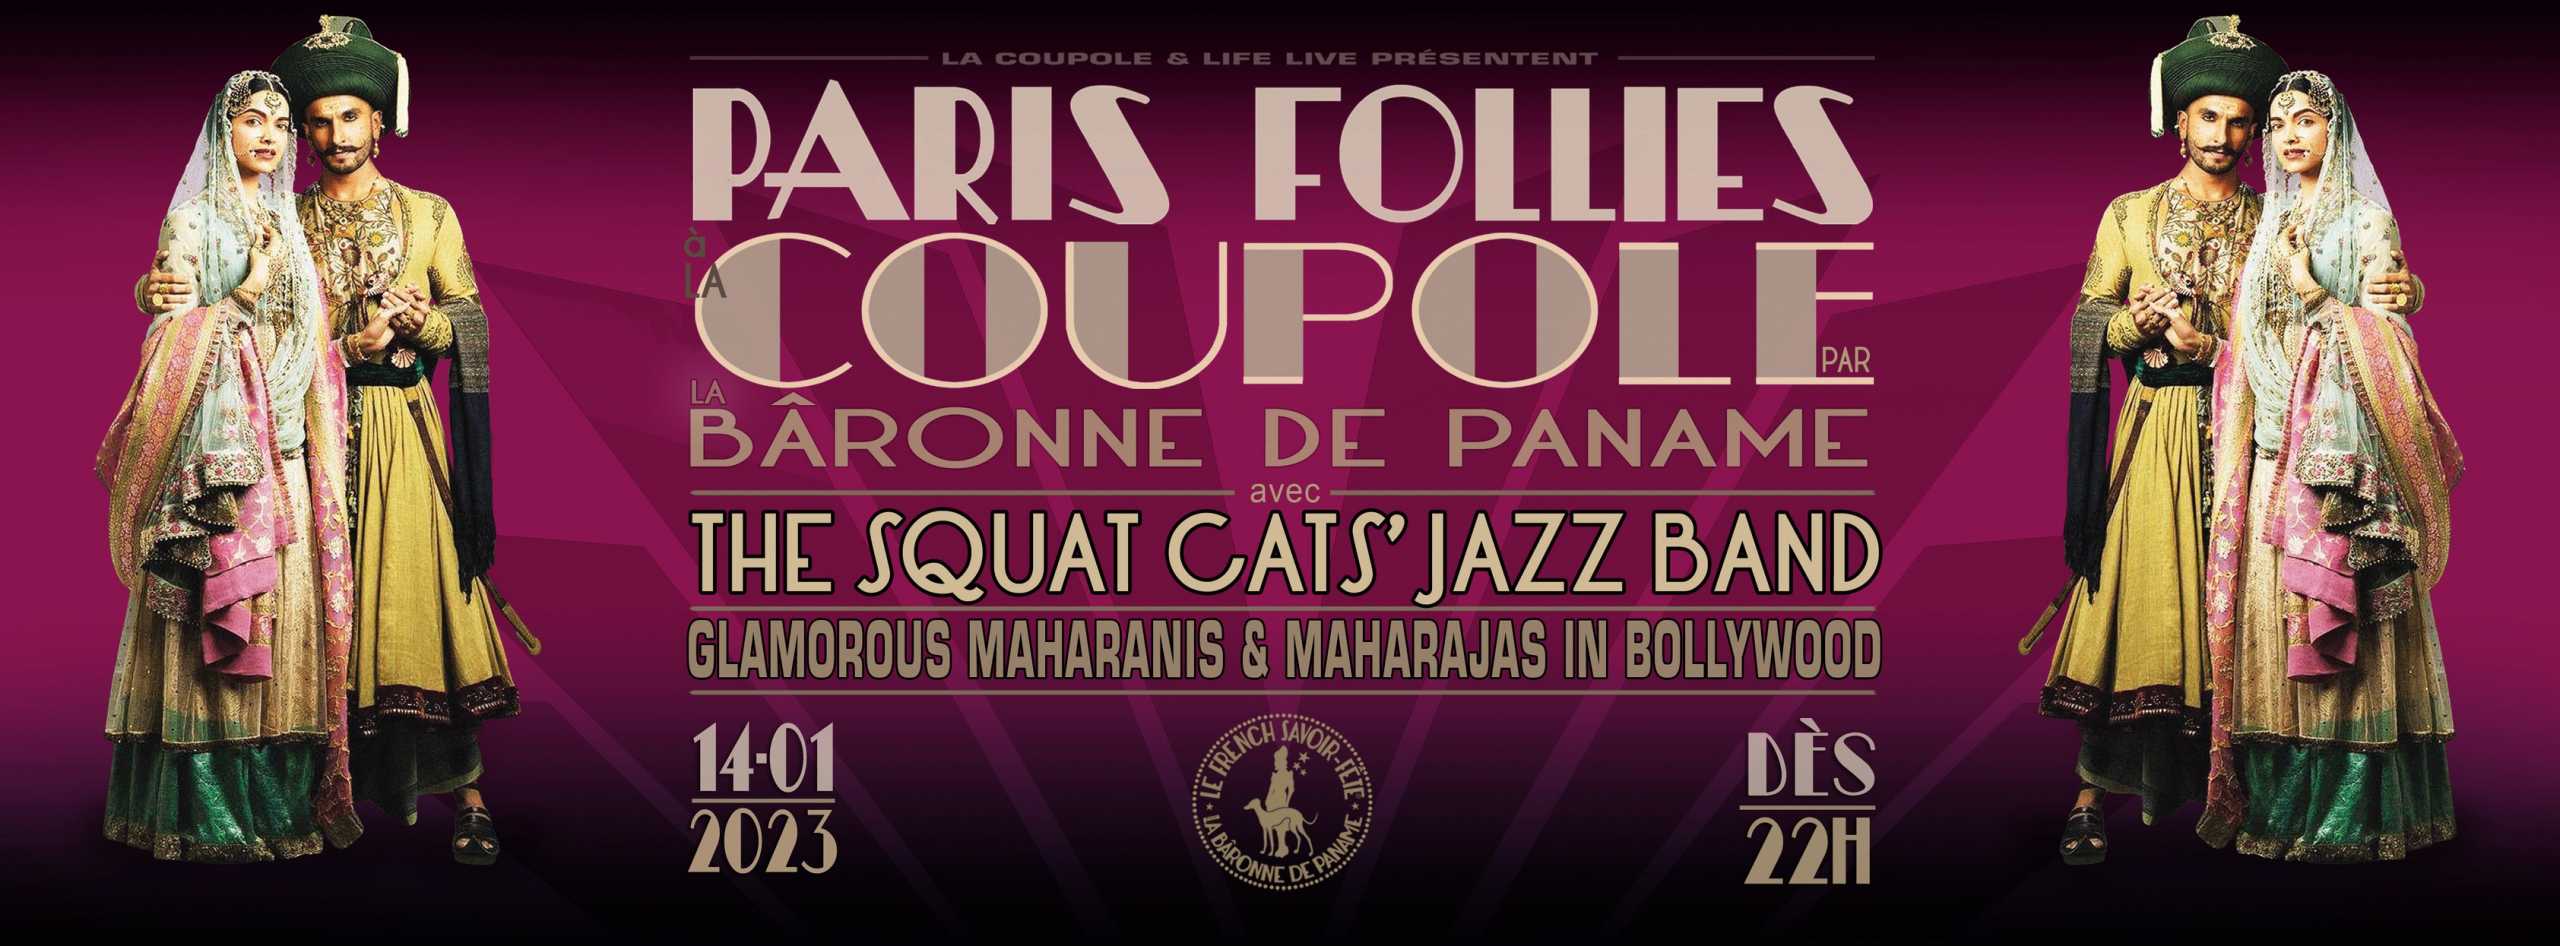 2023-01-13-baronne-de-paname-paris-follies-inde-la-coupole-paris-crooner-radio